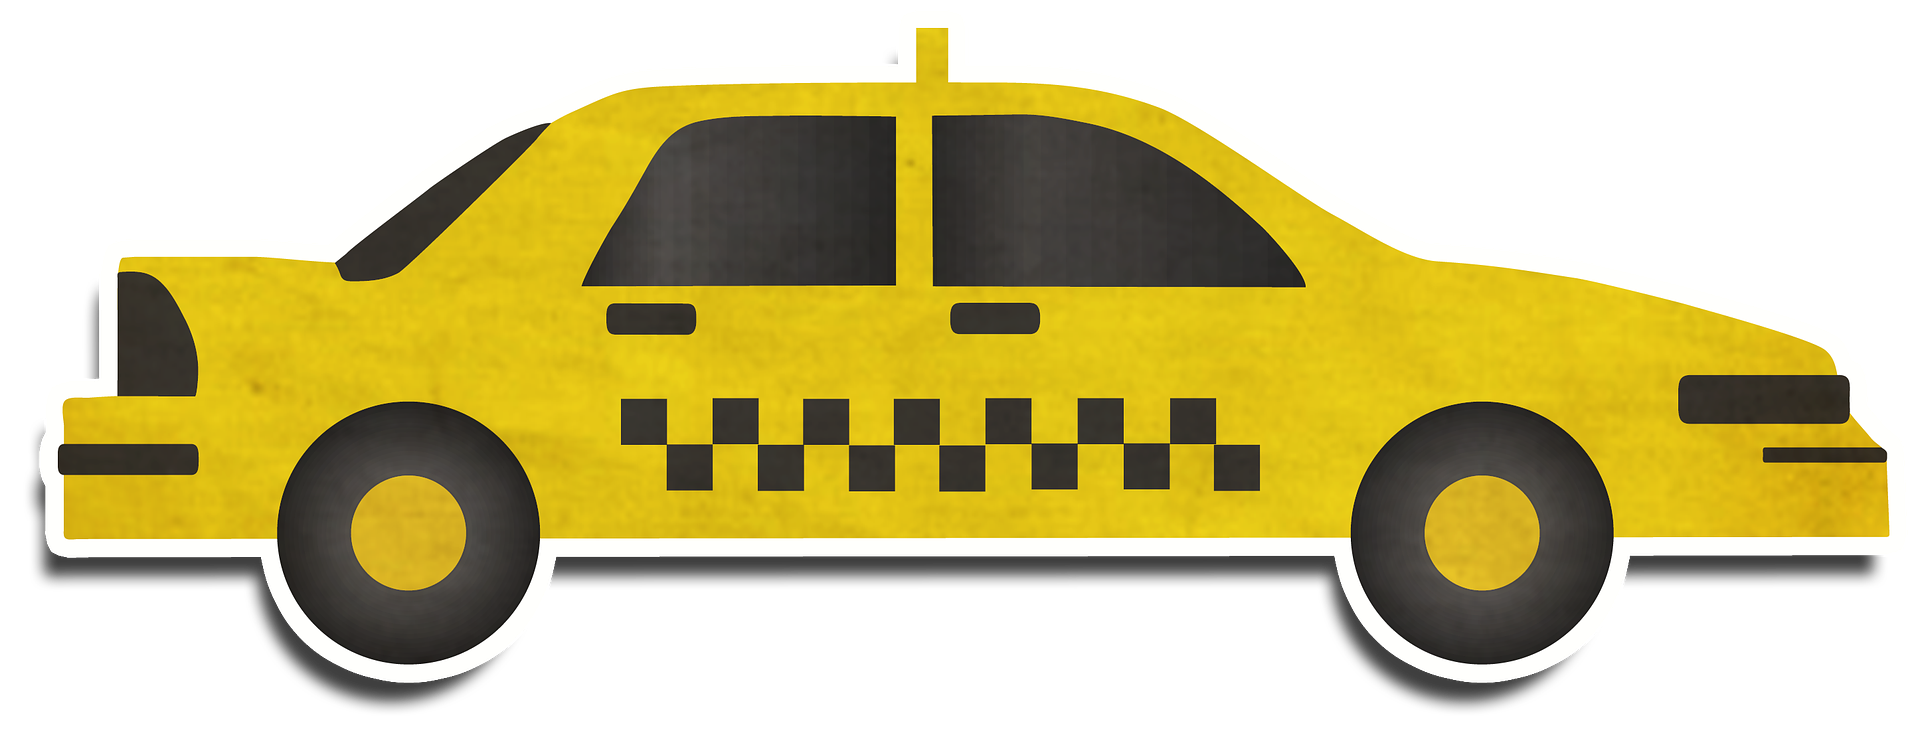 Image taxi jaune